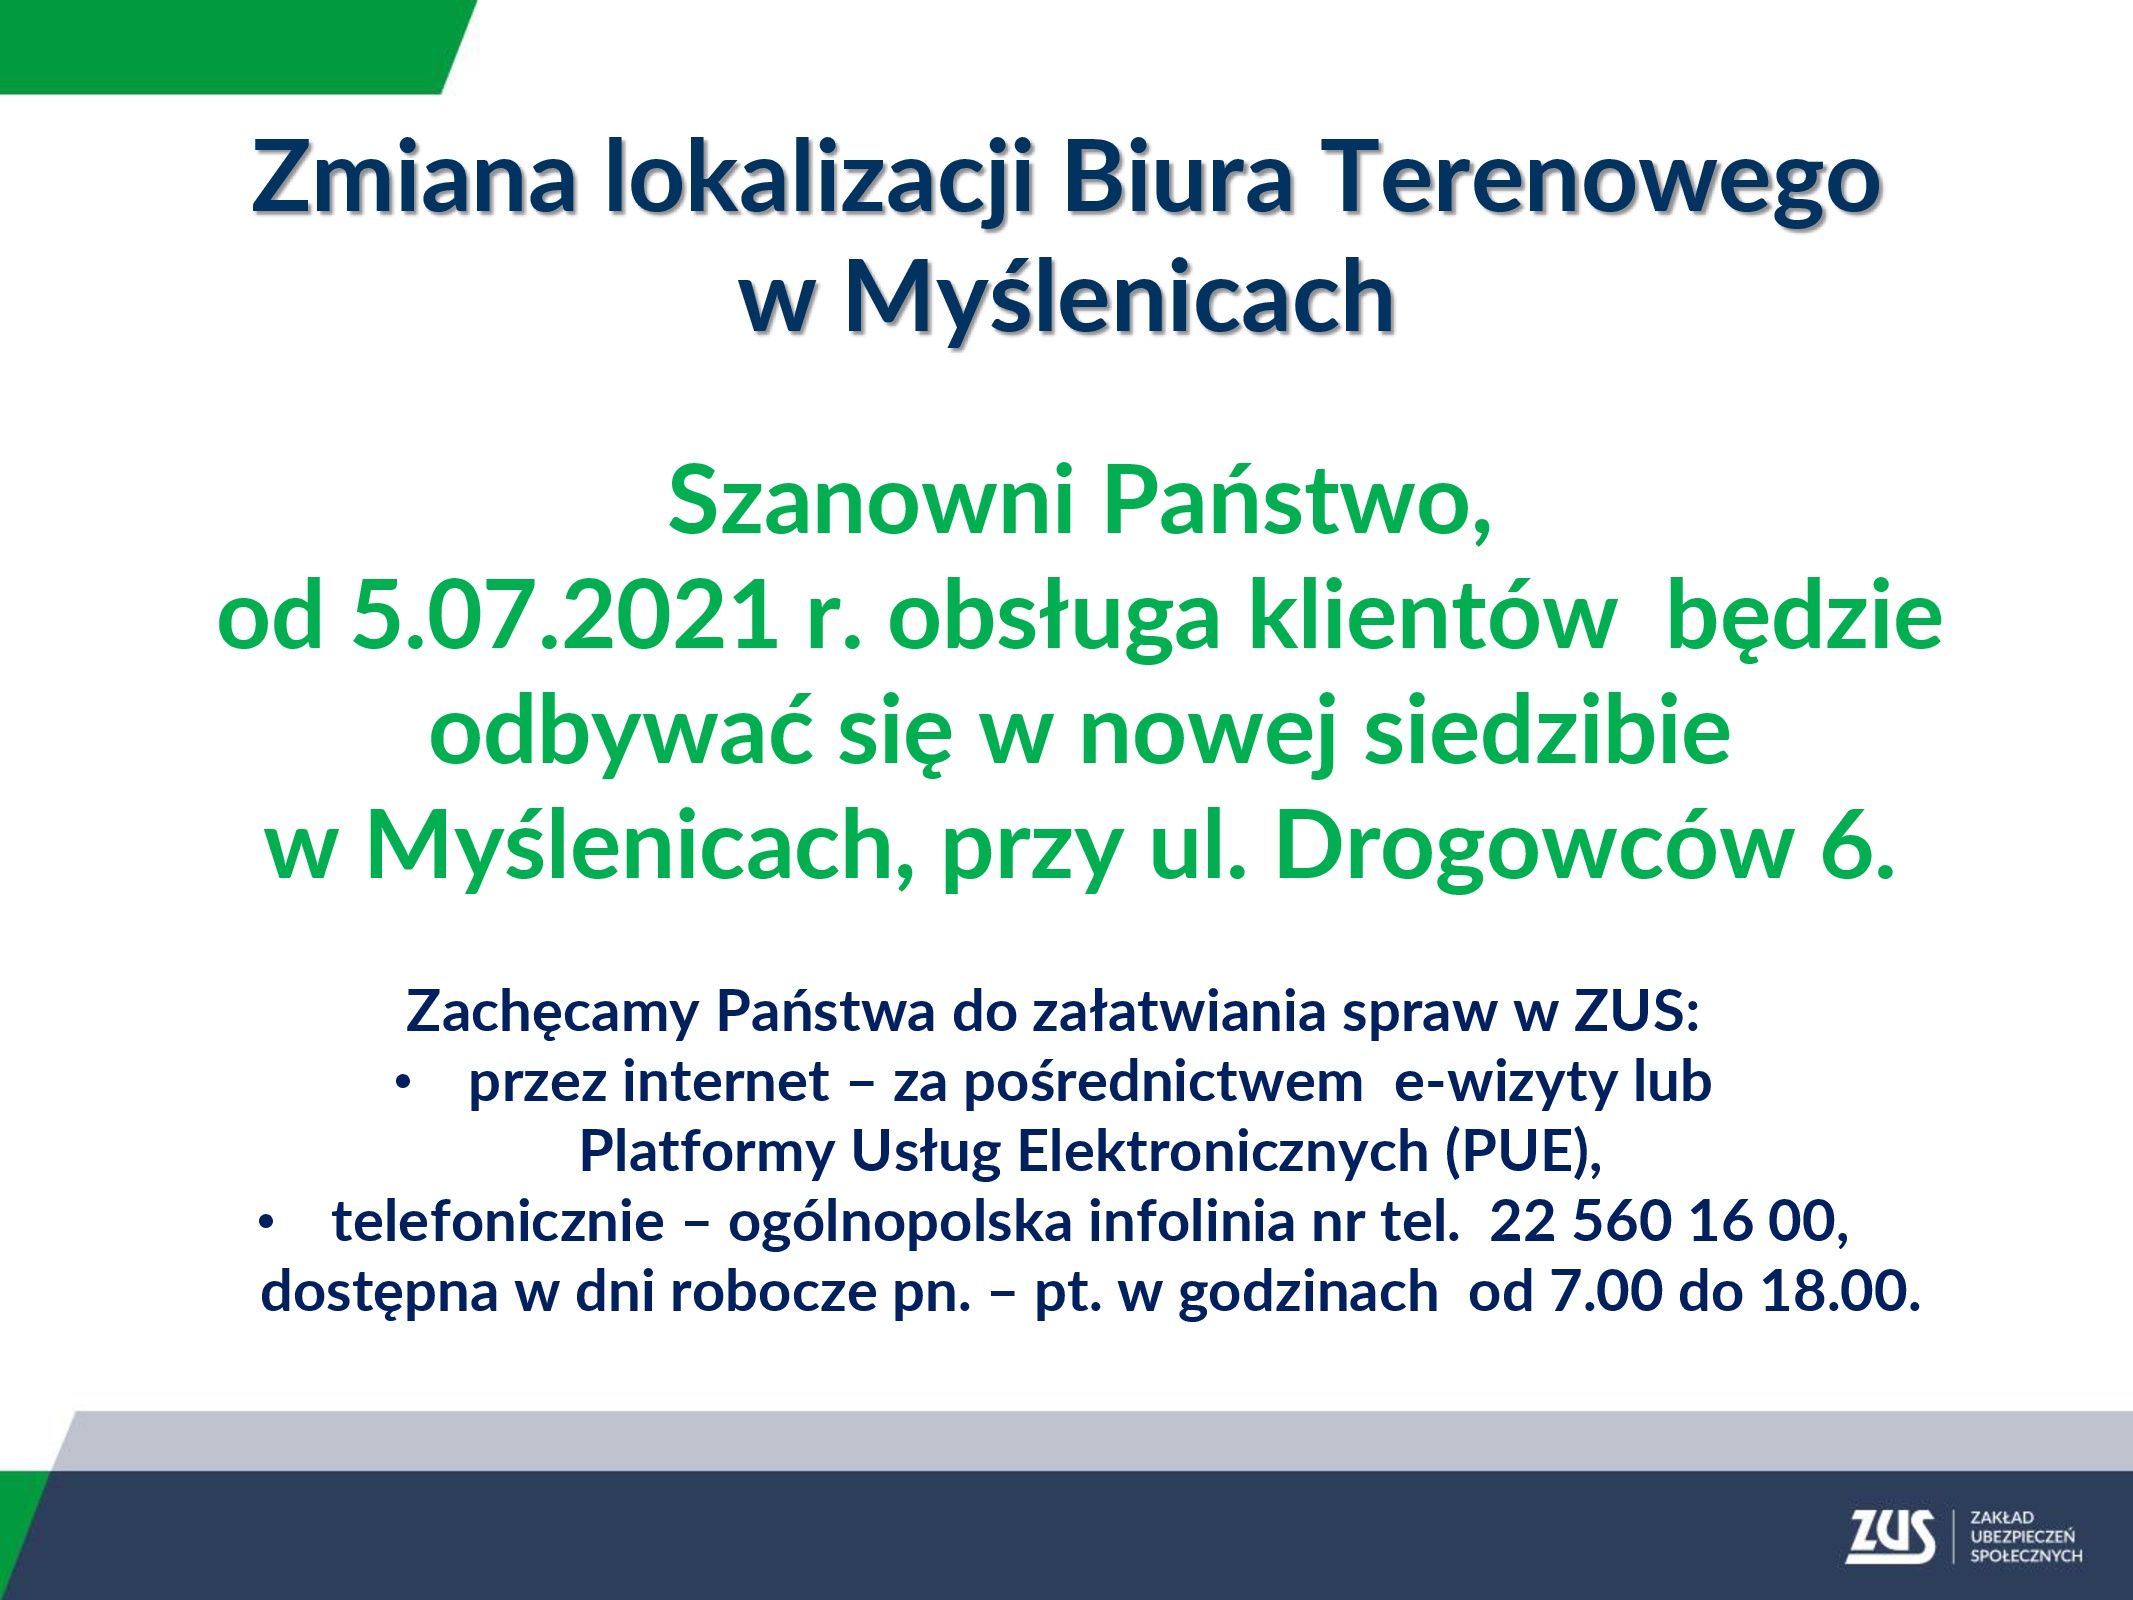 Komunikat informujący o zmianie lokalizacji Biura Terenowego ZUS w Myślenicach